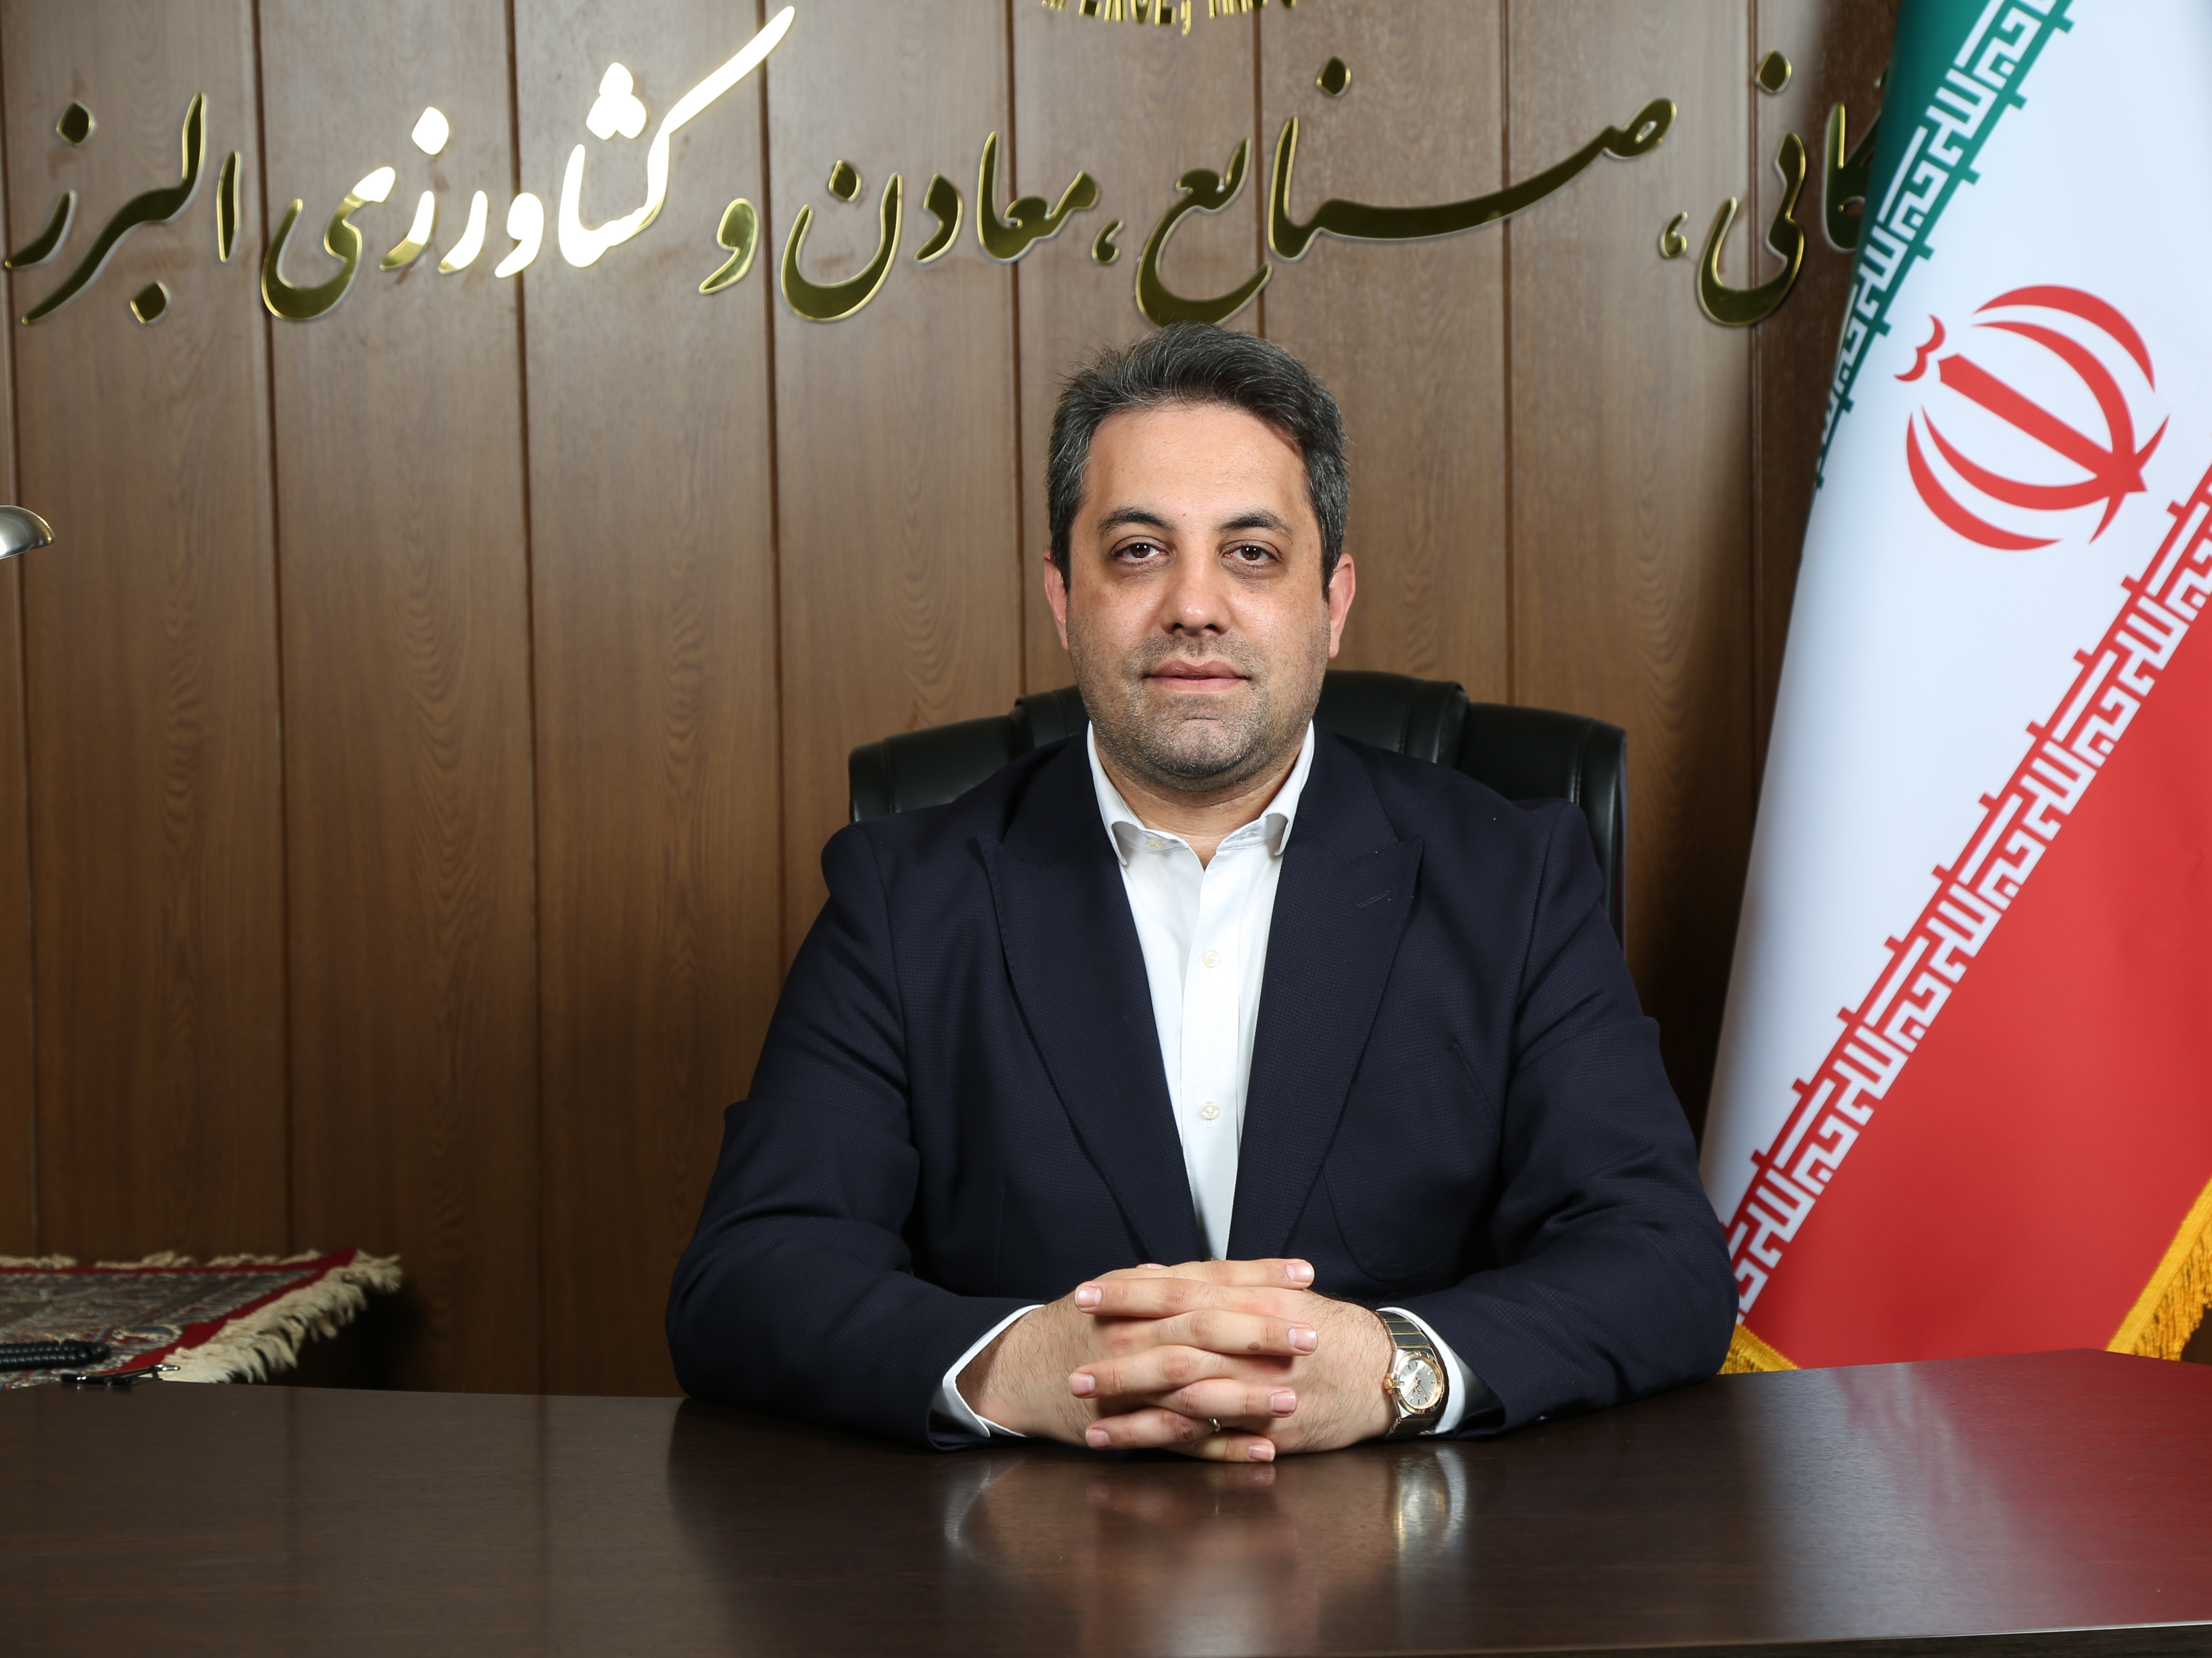 پیام تبریک رئیس اتاق بازرگانی البرز به مناسبت انتخاب شهرک صن